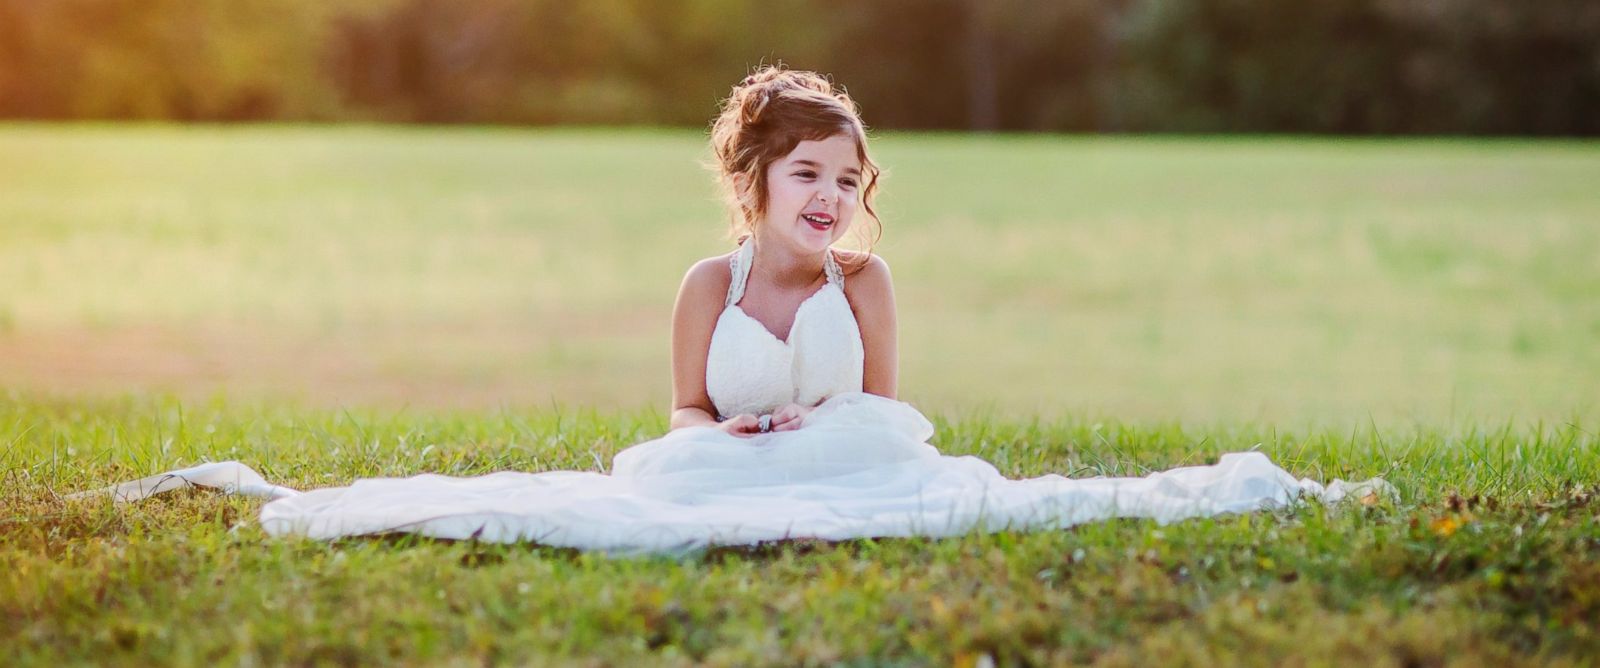 Con gái 4 tuổi mặc váy cưới để tái hiện hình ảnh người mẹ đã mất